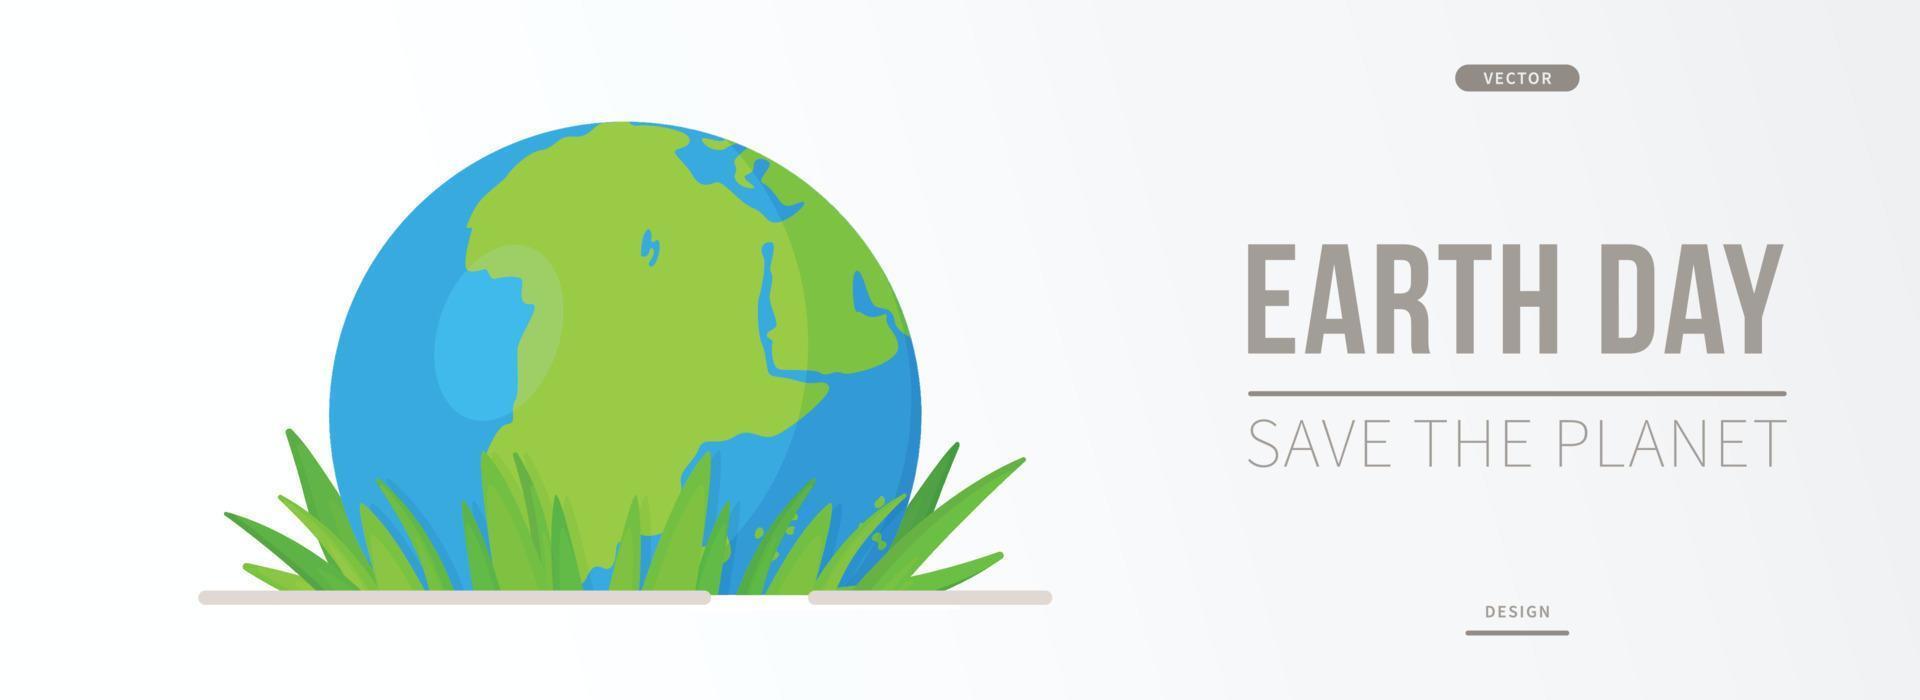 illustrazione vettoriale del banner del giorno dei rifiuti del pianeta. giornata mondiale del pianeta terra. 22 aprile. salvare il mondo dai rifiuti.